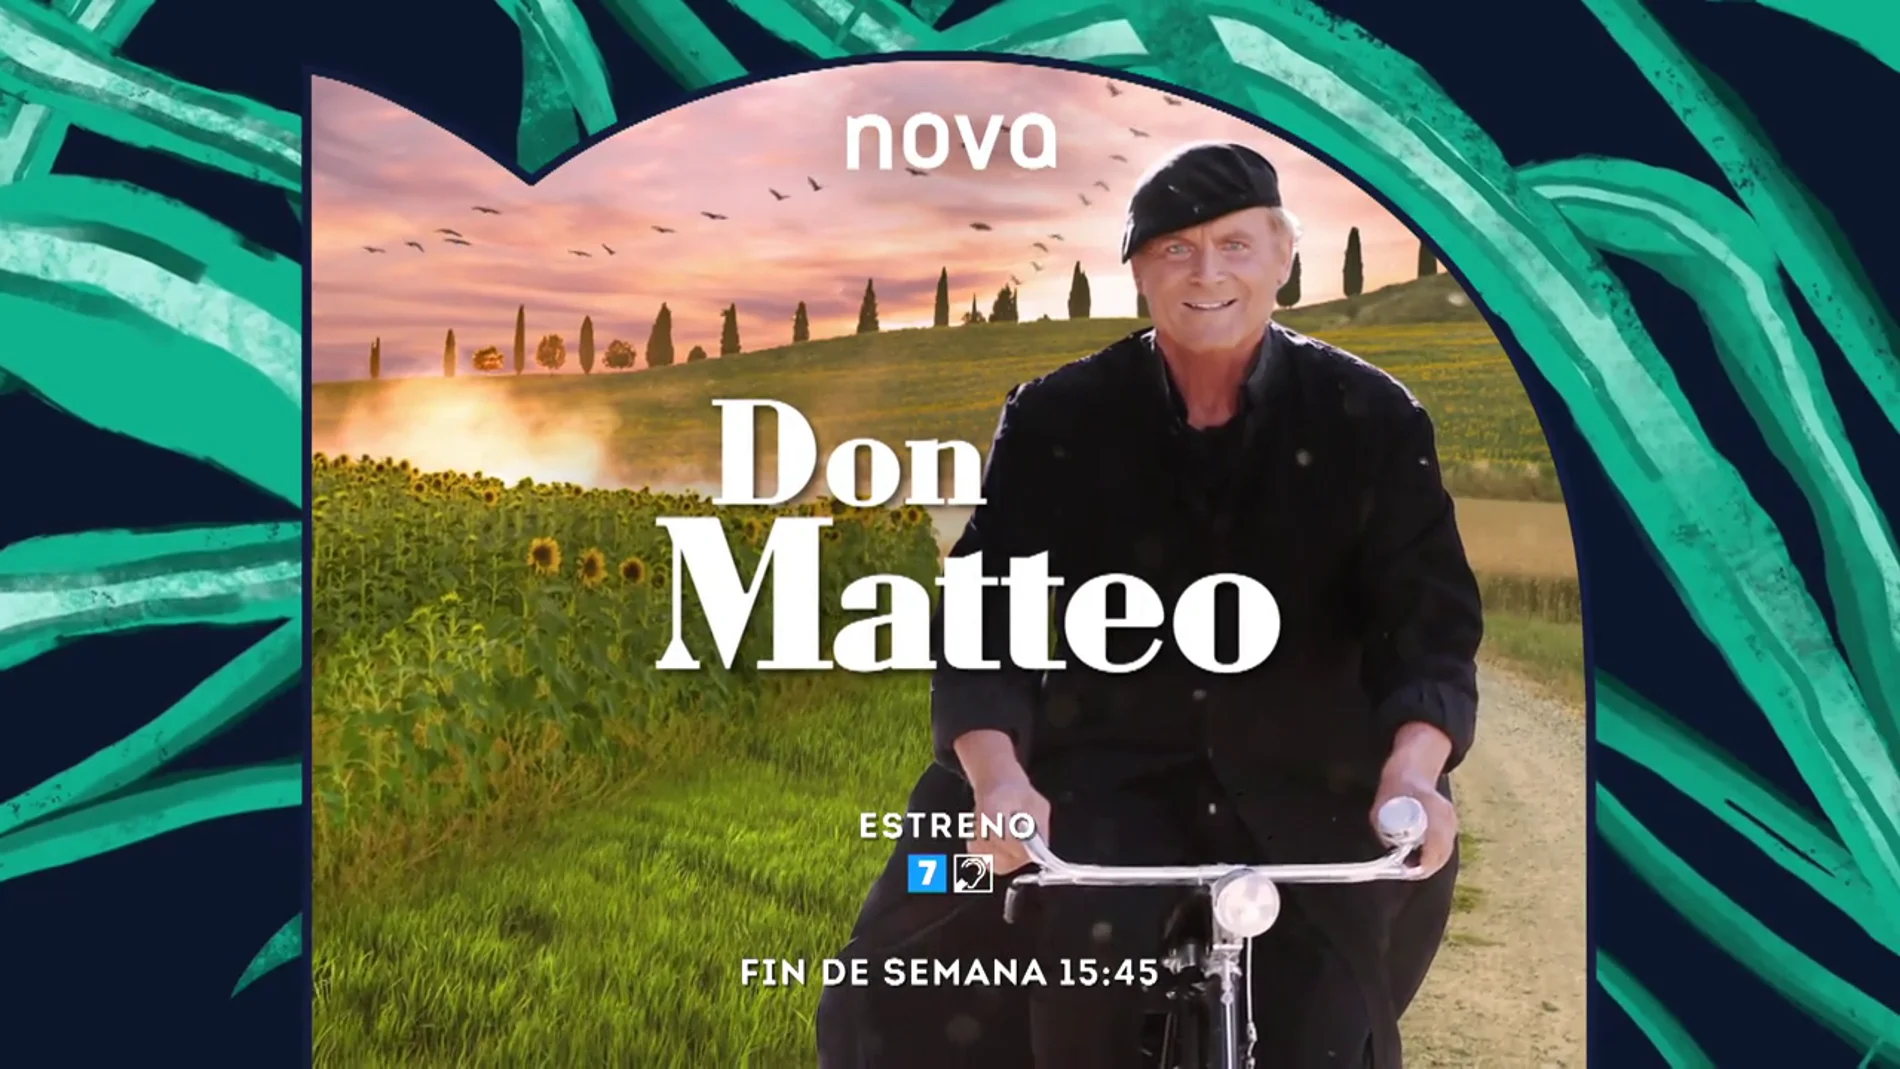 El fin de semana, llega a las tardes de Nova 'Don Matteo'